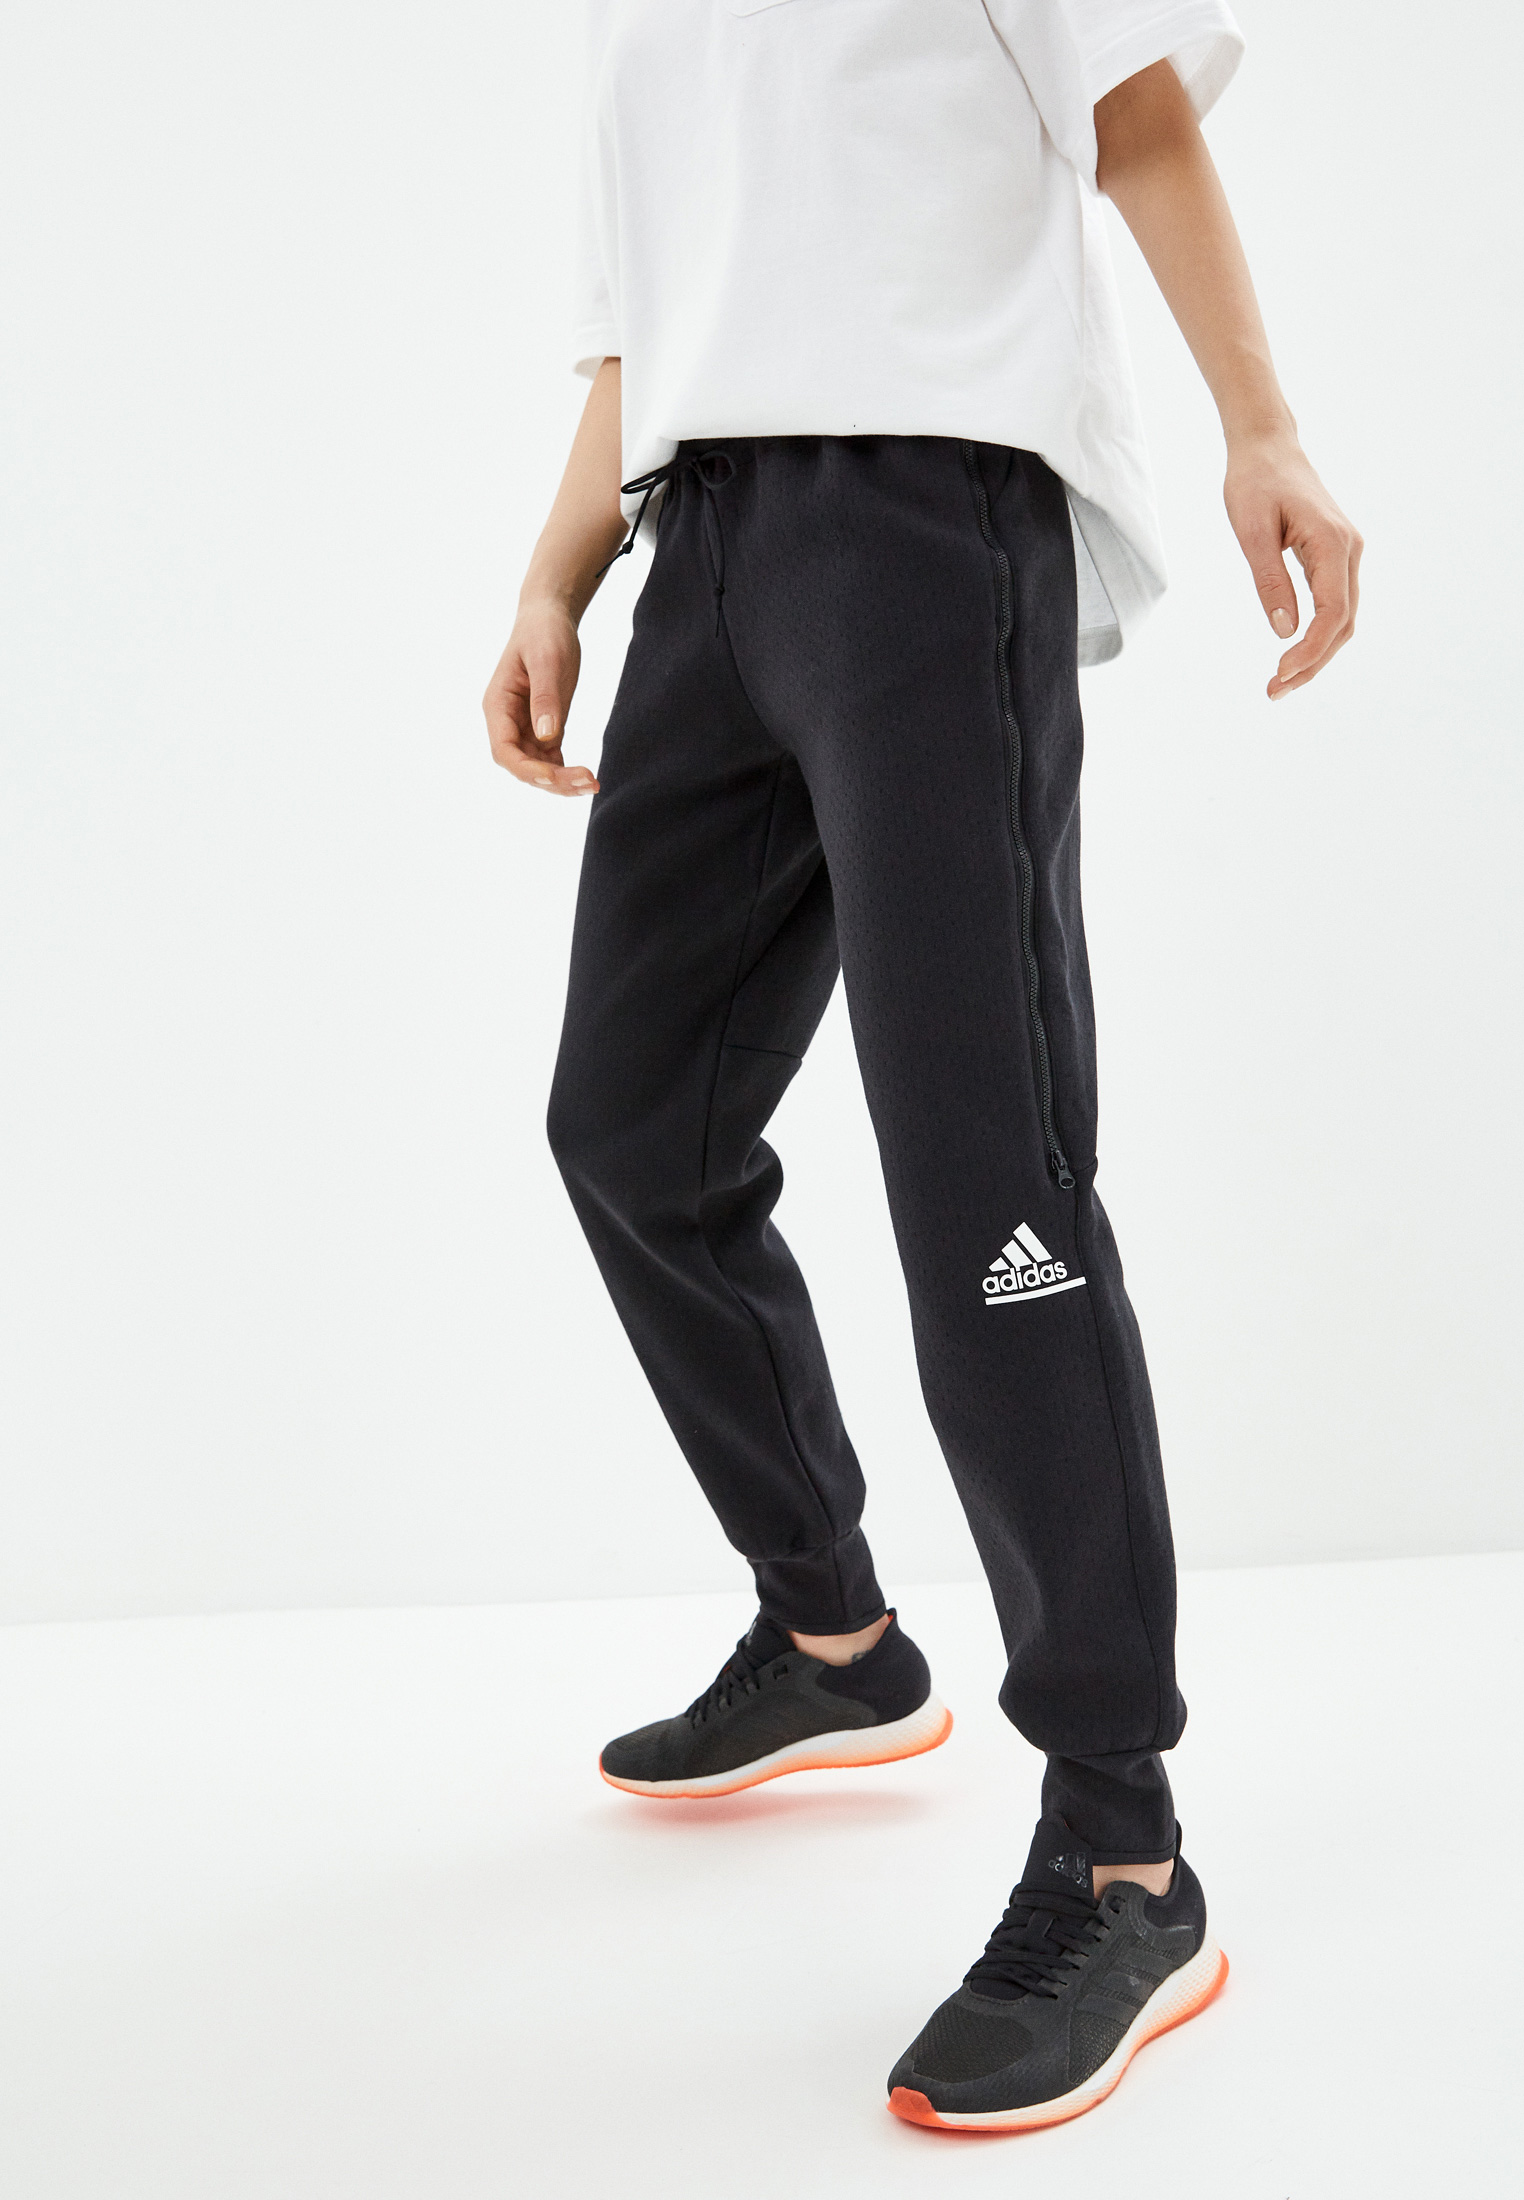 Женские брюки Adidas (Адидас) GM3282 купить